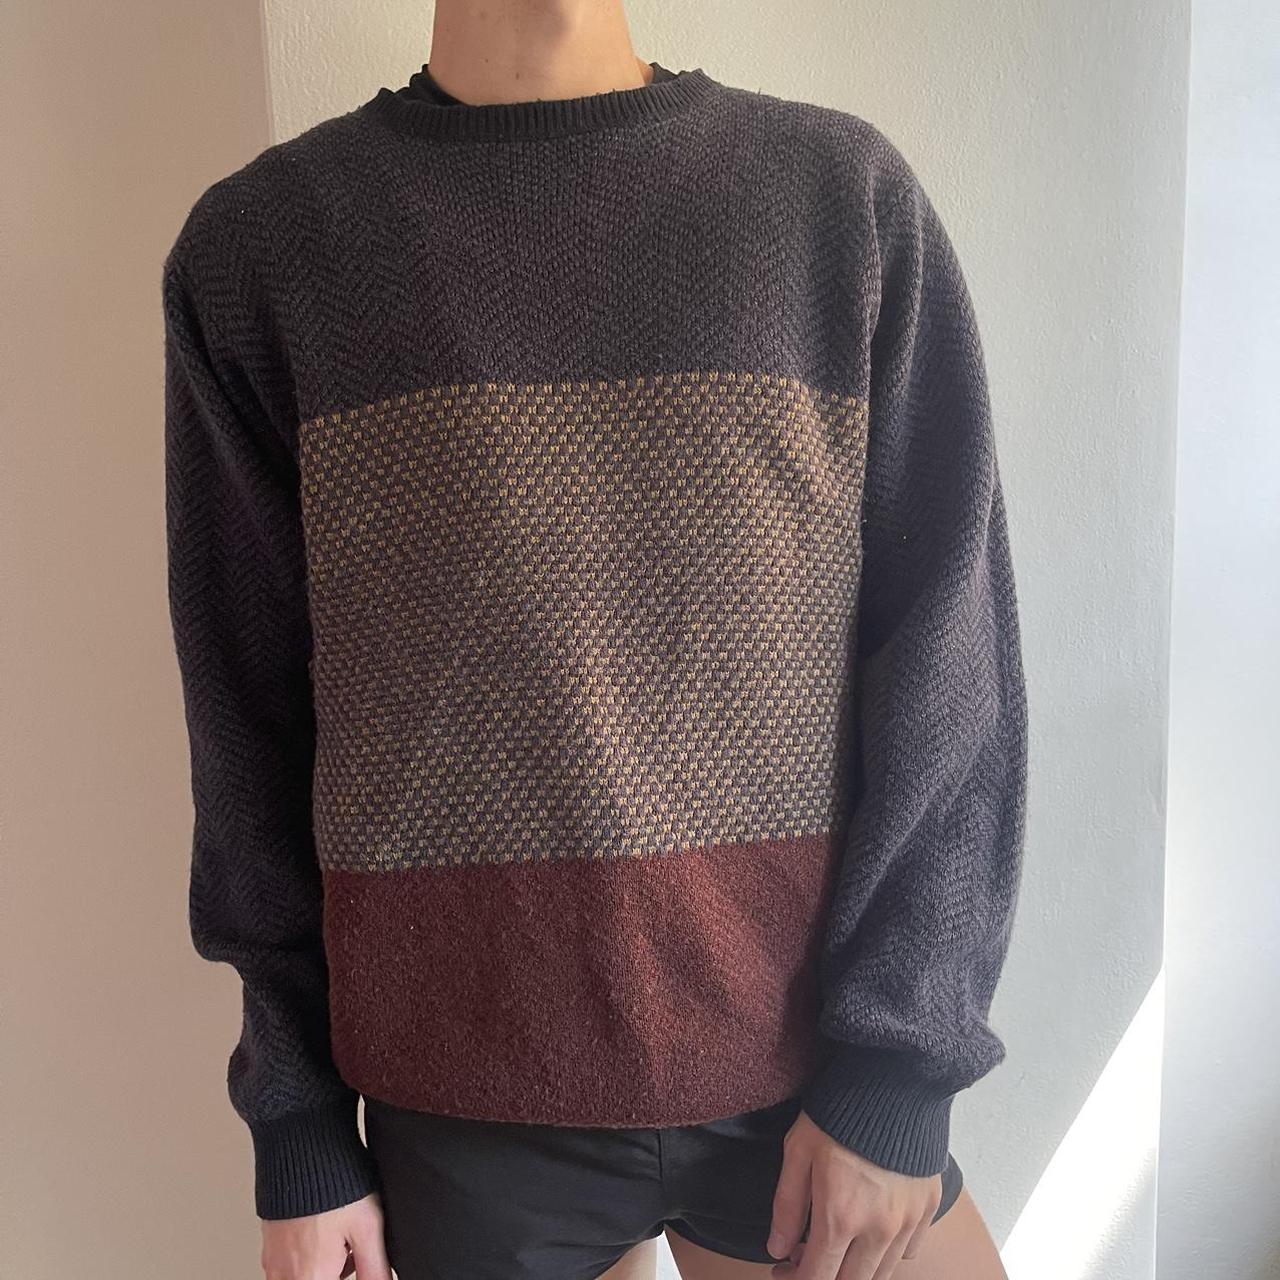 Multi Colour Knit Sweater (Men’s size XL) Super... - Depop